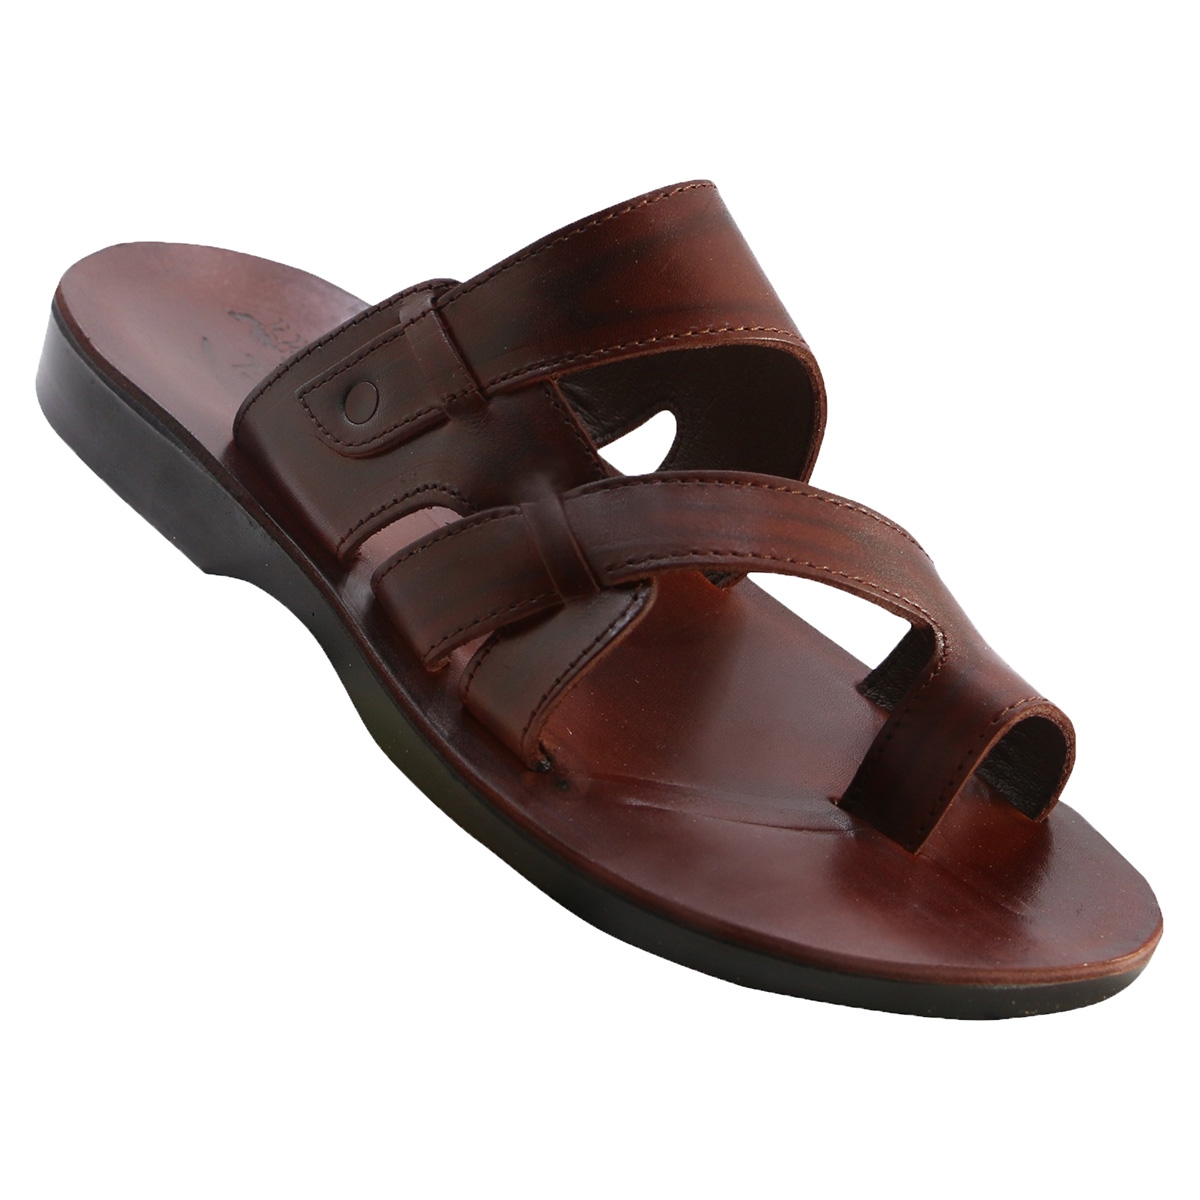 Reuben Men's Handmade Leather Sandals - 1